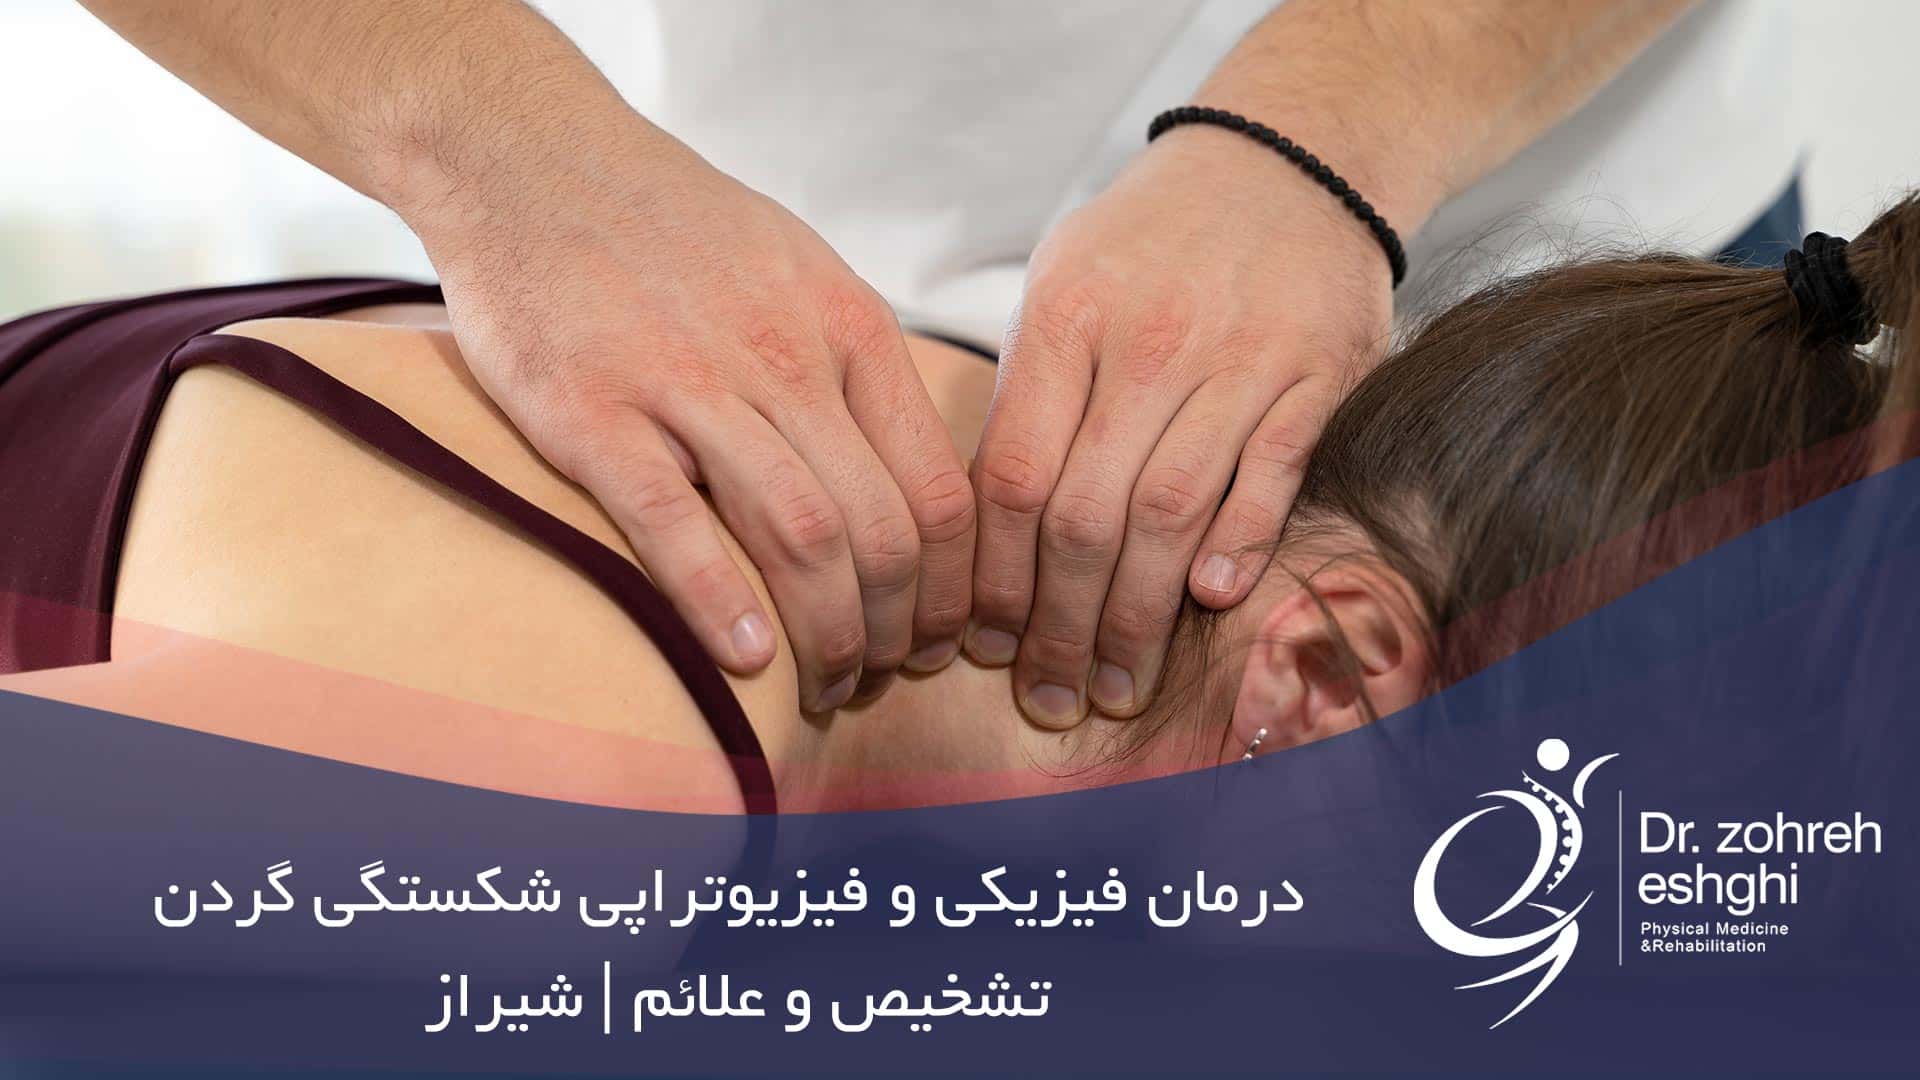 درمان فیزیکی و فیزیوتراپی شکستگی گردن + تشخیص و علائم | شیراز